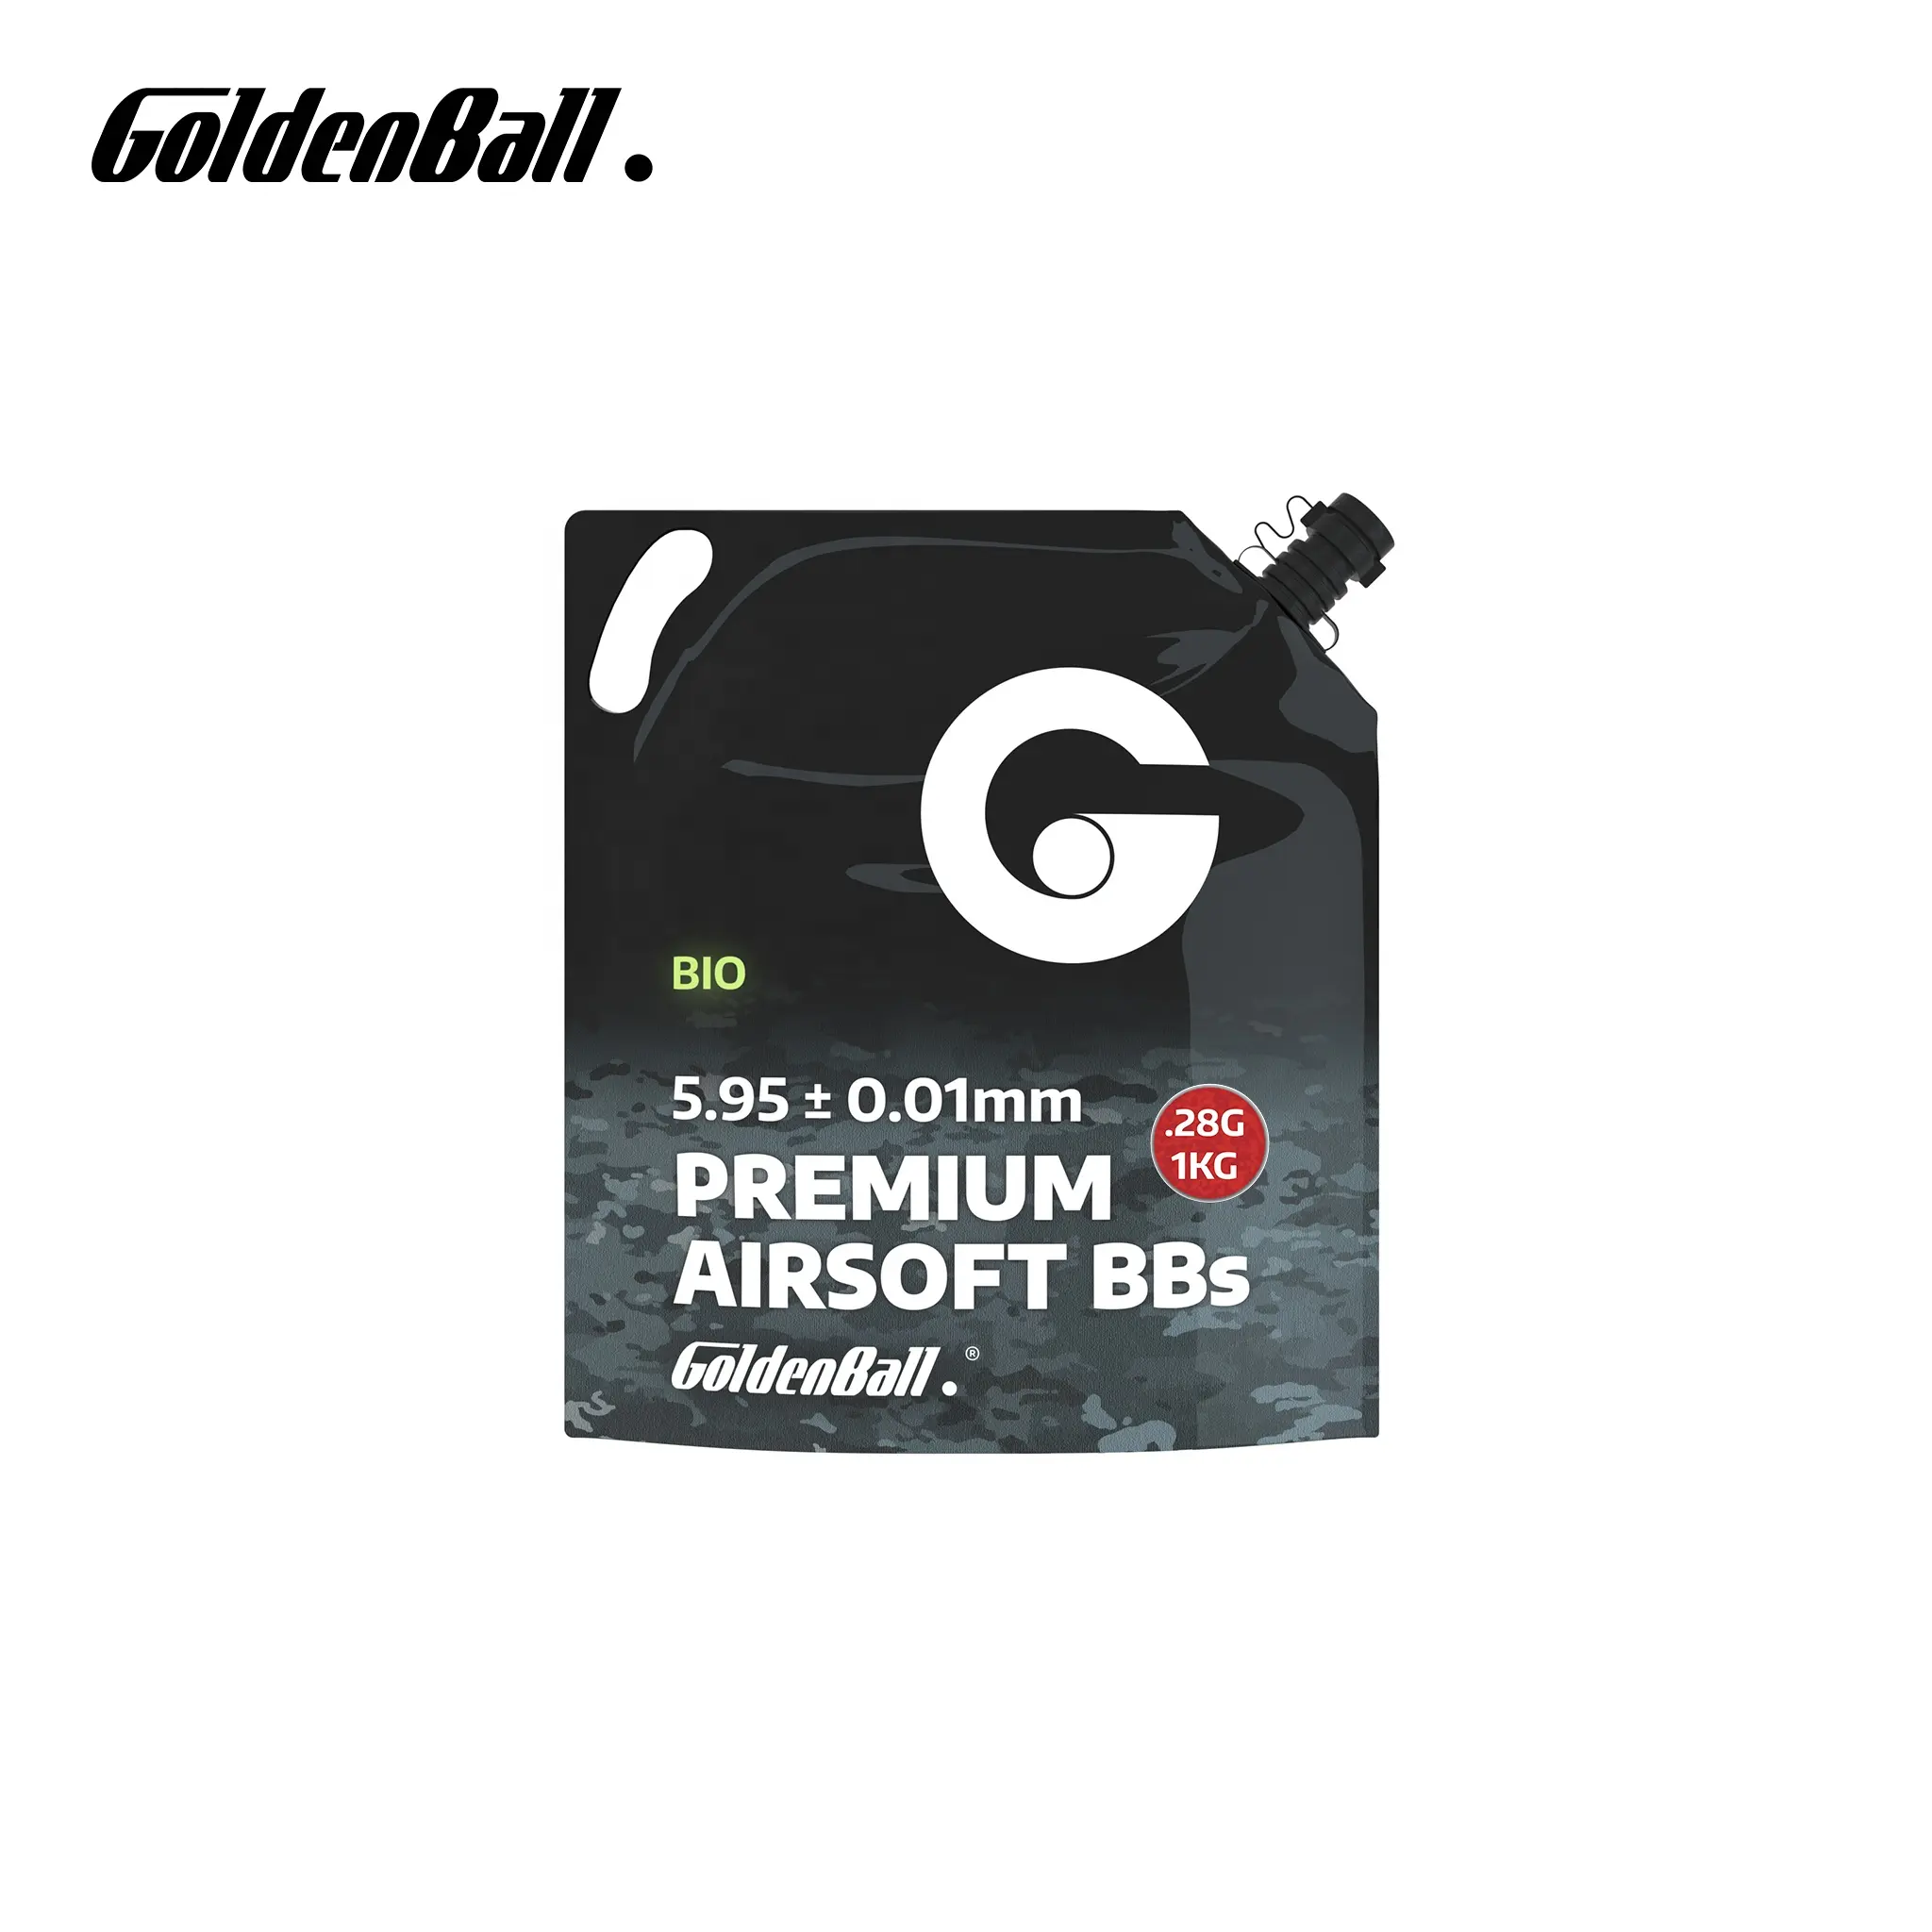 Goldenball 0.28g Biodegradable Premium Airsoft BB Pellets 5.95+/-0.01mm 1kg 3571 rounds